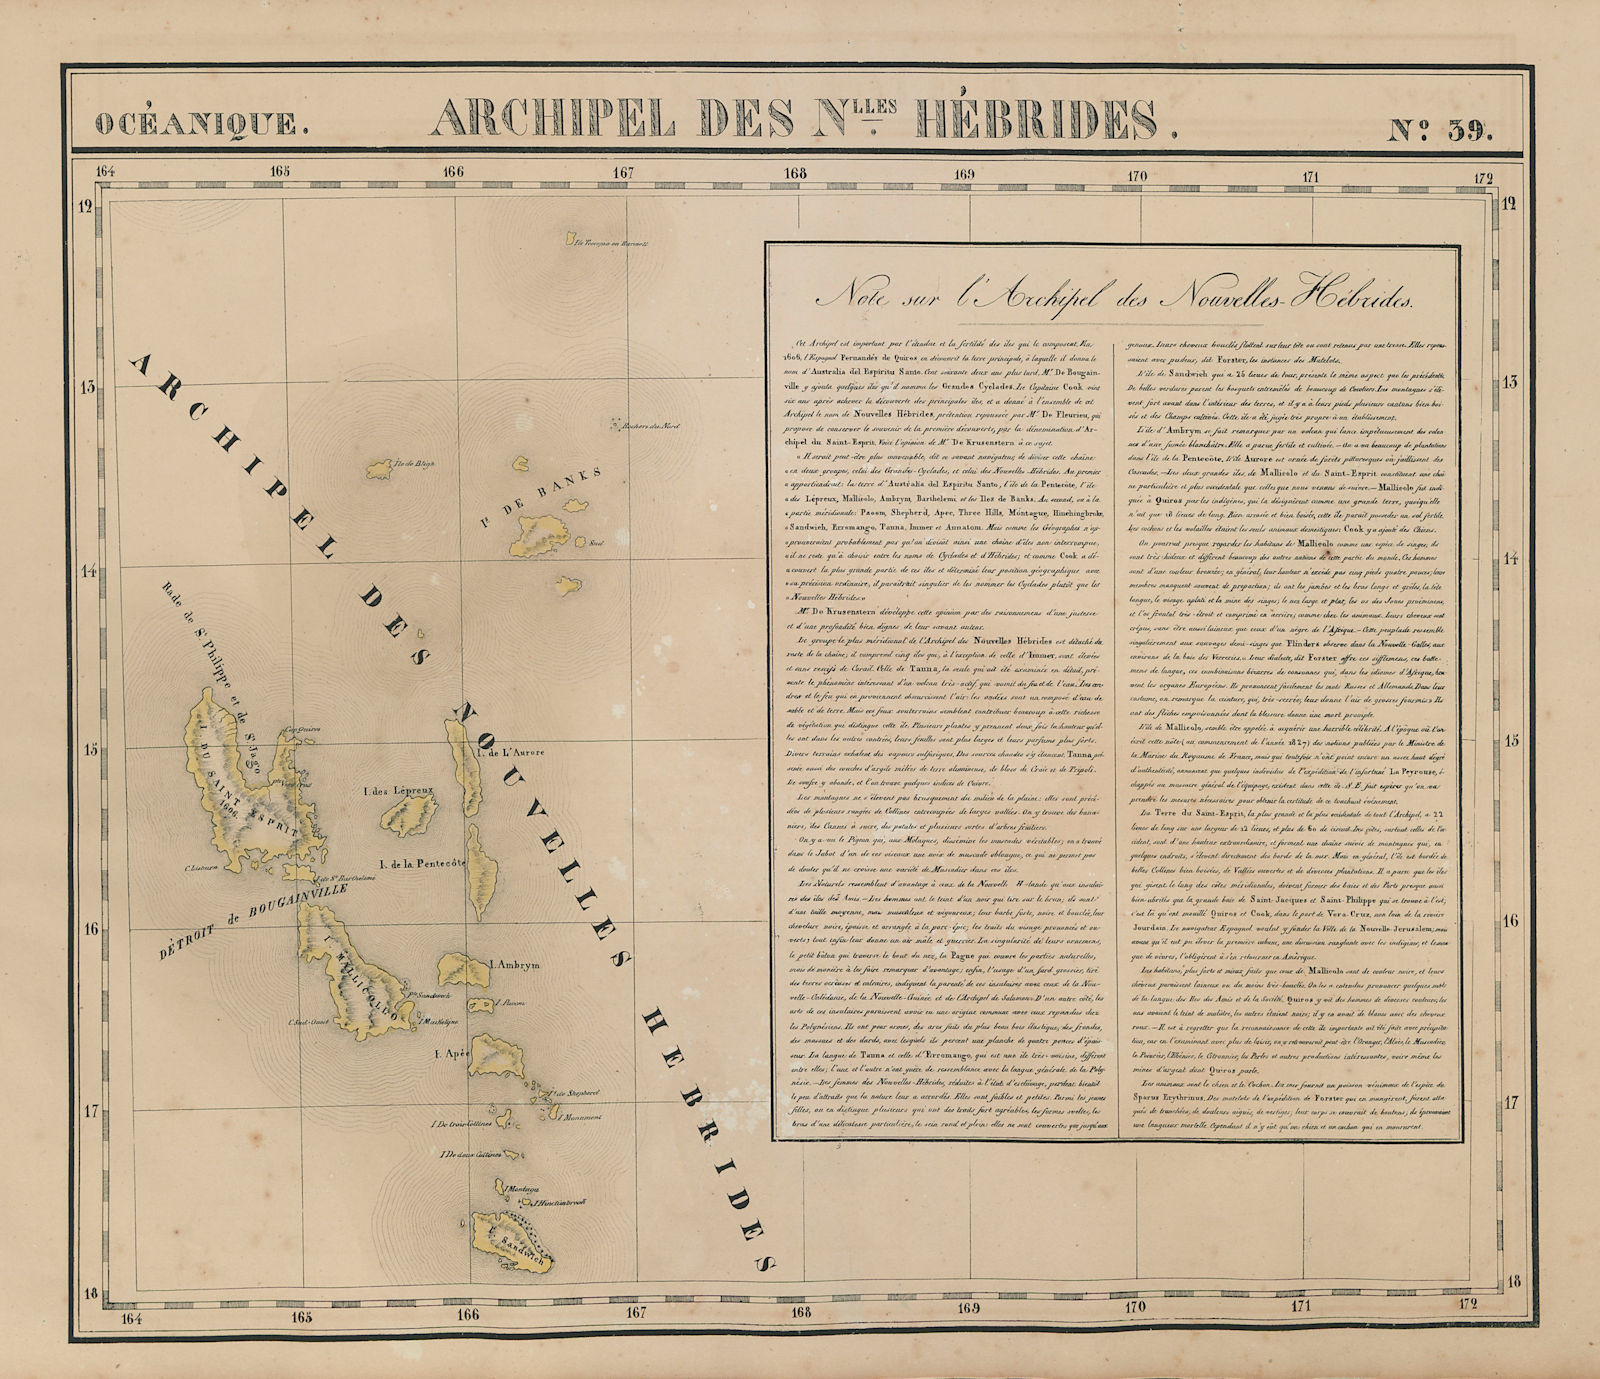 Océanique. Archipel des Nouvelle Hébrides #39. Vanuatu. VANDERMAELEN 1827 map